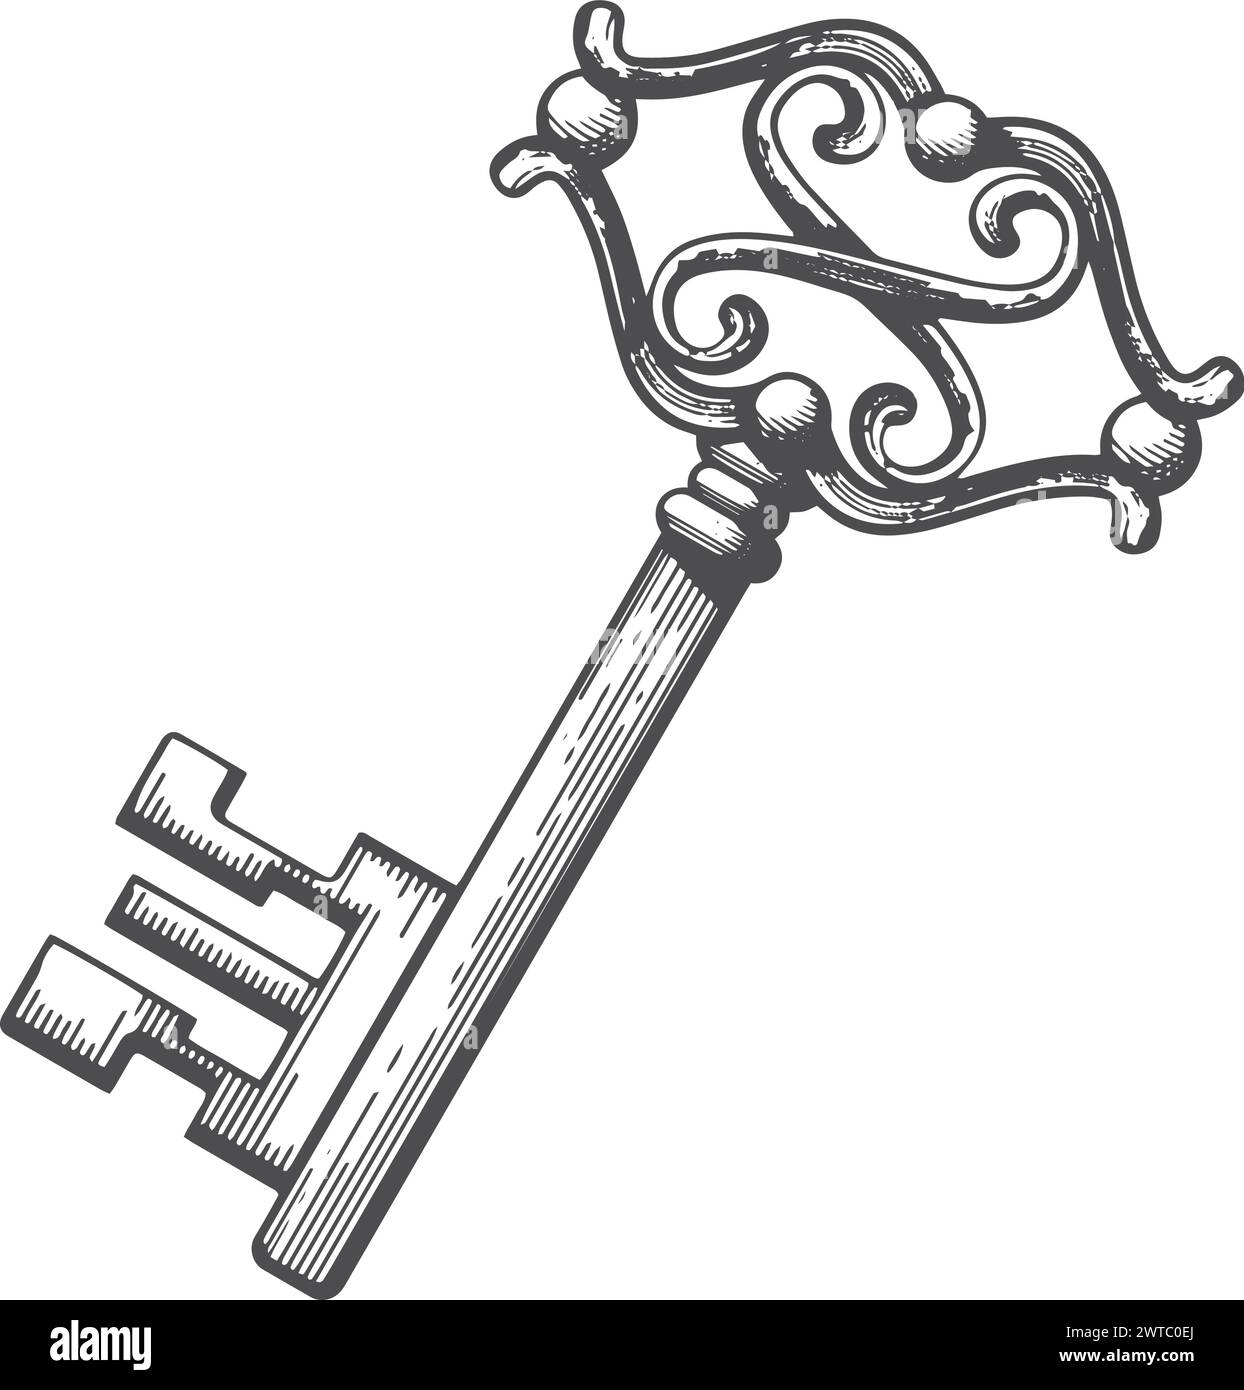 Dessin de clé en métal baroque. Gravure de style vintage Illustration de Vecteur